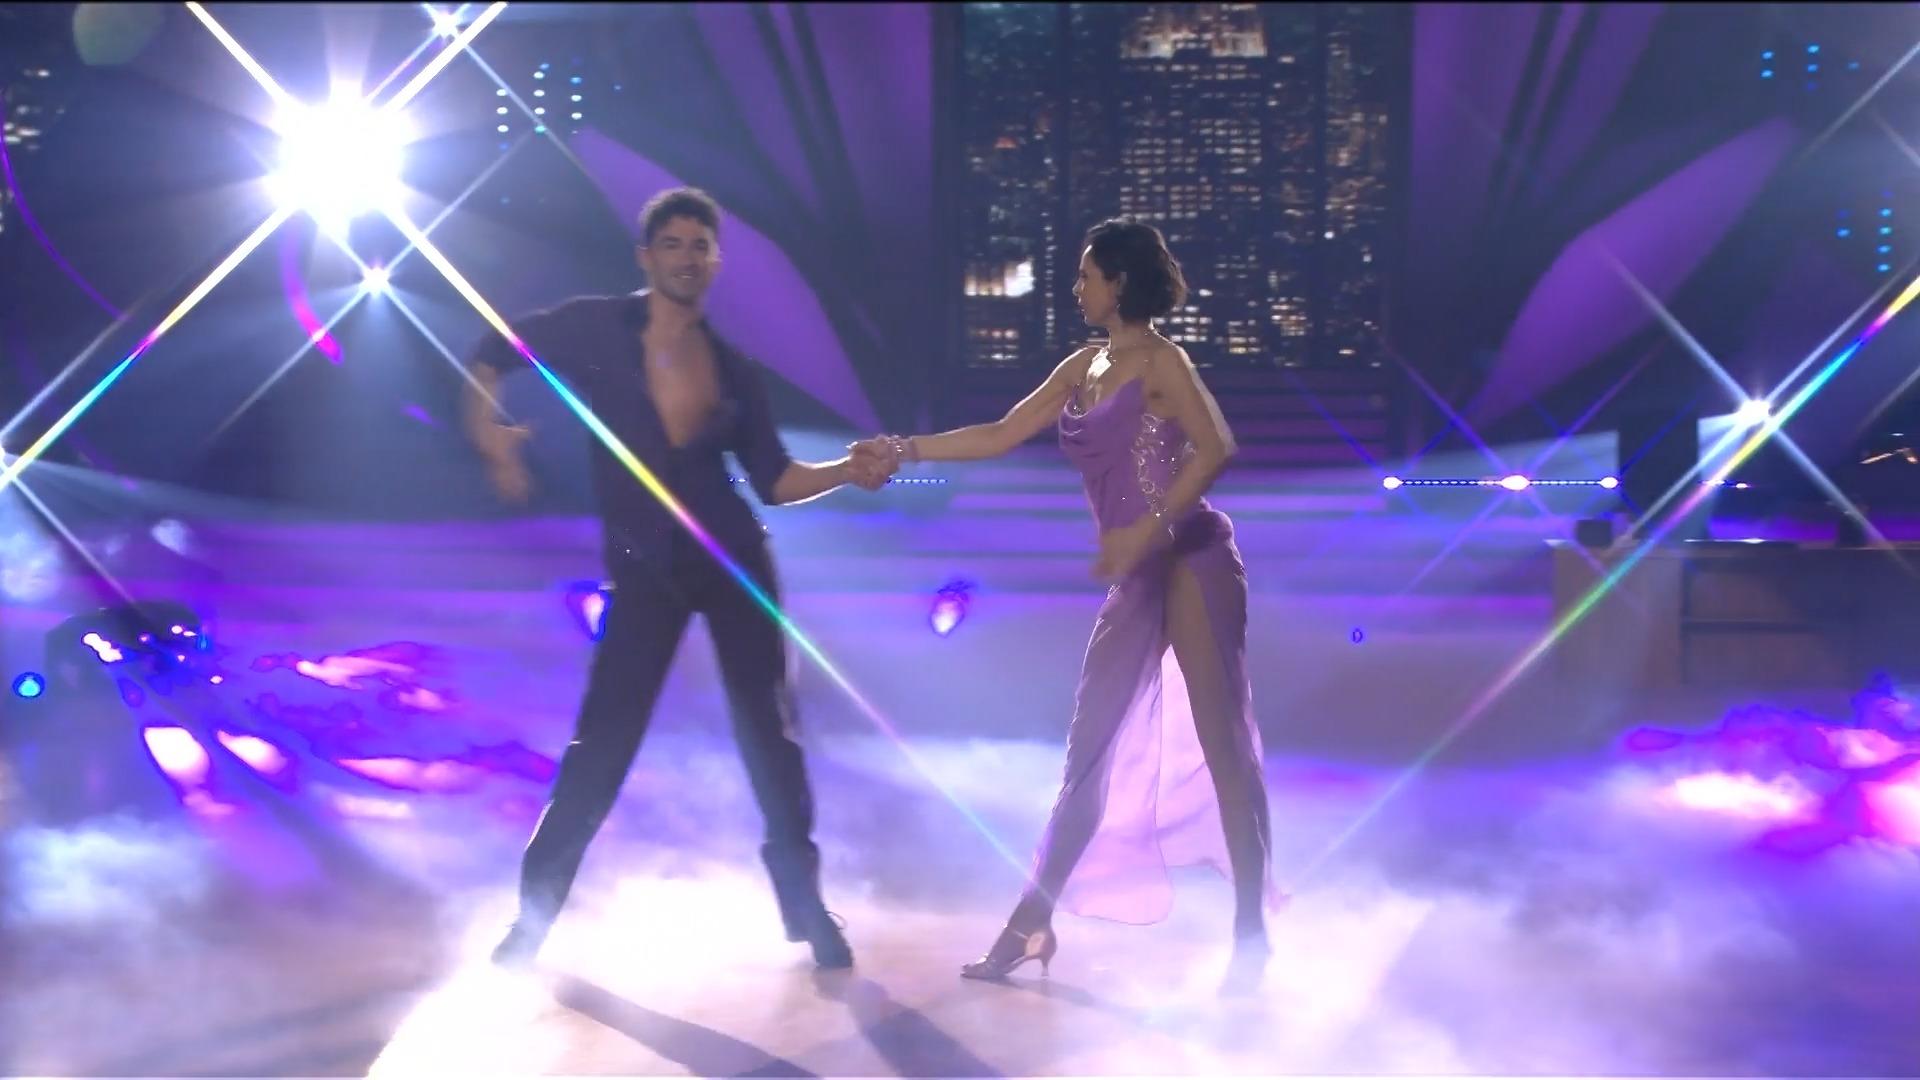 Natalia Yegorova tanzt Leben in "Mandy" Sind das zwei "Let's Dance"-Profis?